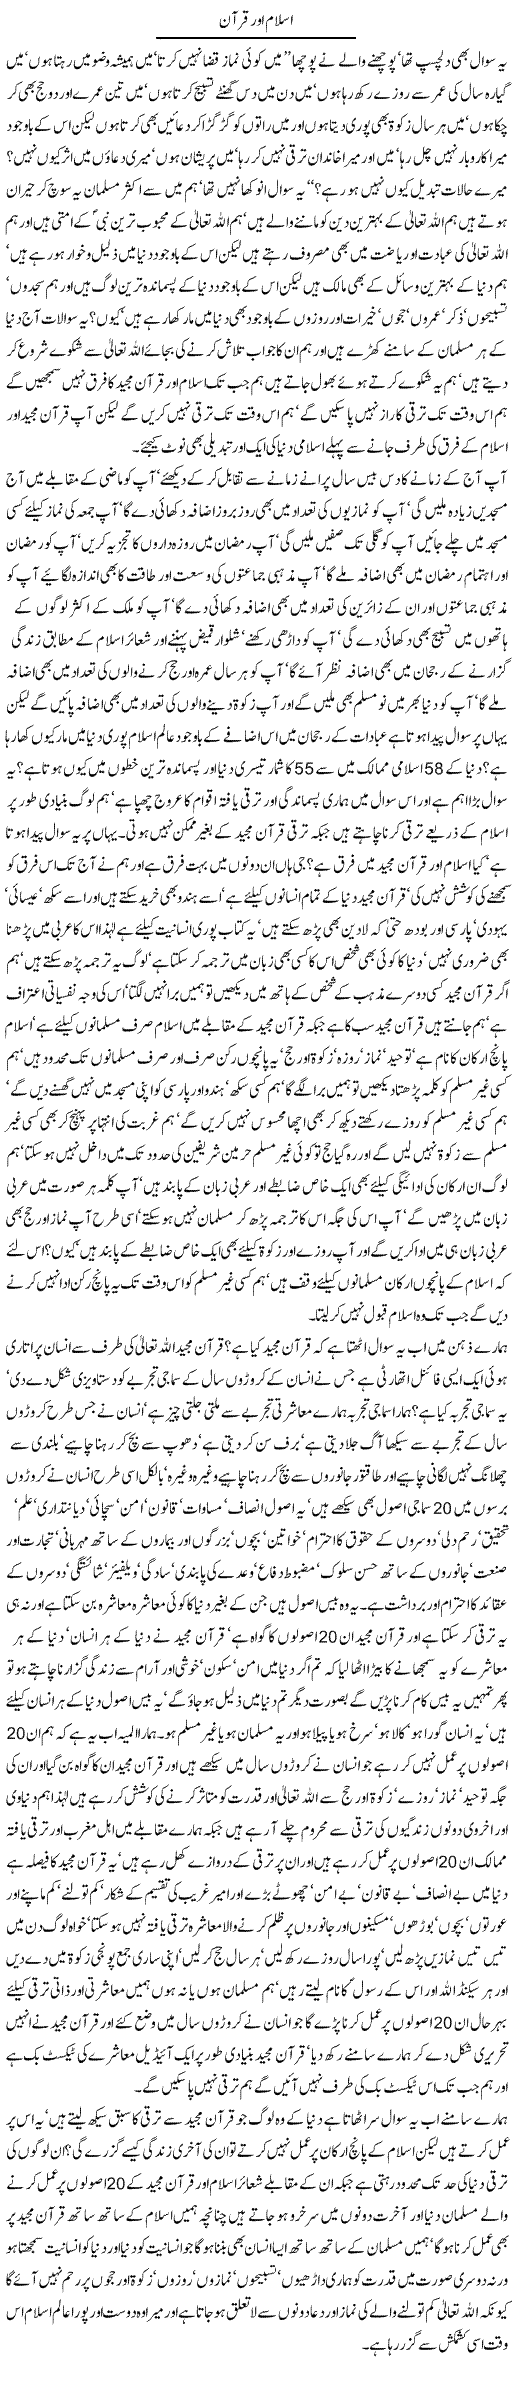 Islam and Quran Express Column Javed Chaudhry 22 May 2011